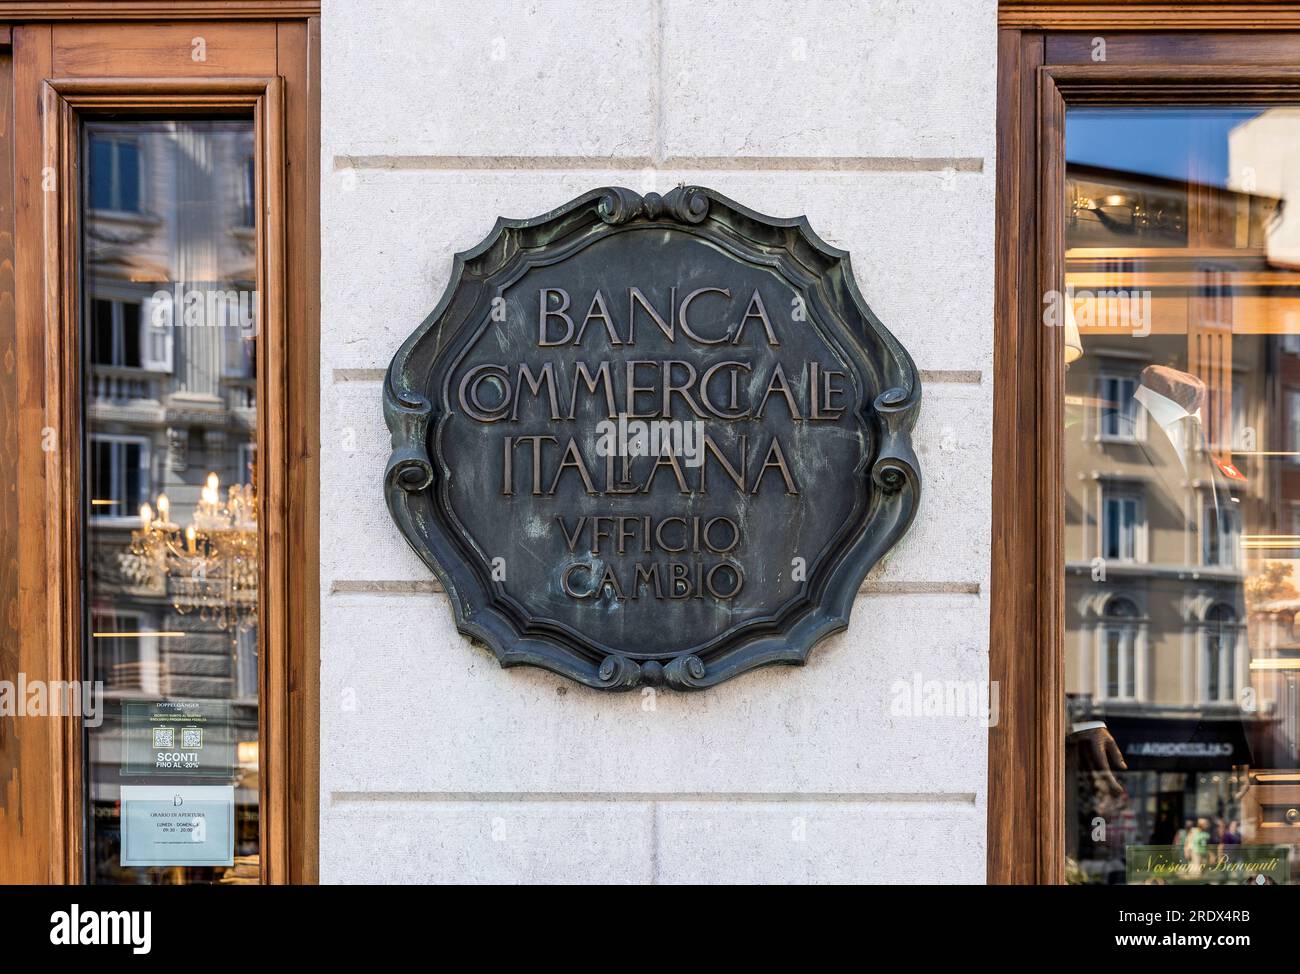 Bronzetafel, die auf die alte Wechselstube der ehemaligen „Banca Commerciale Italiana“ (Commercial Italian Bank) verweist, die 1894 in Triest, Italien, gegründet wurde Stockfoto